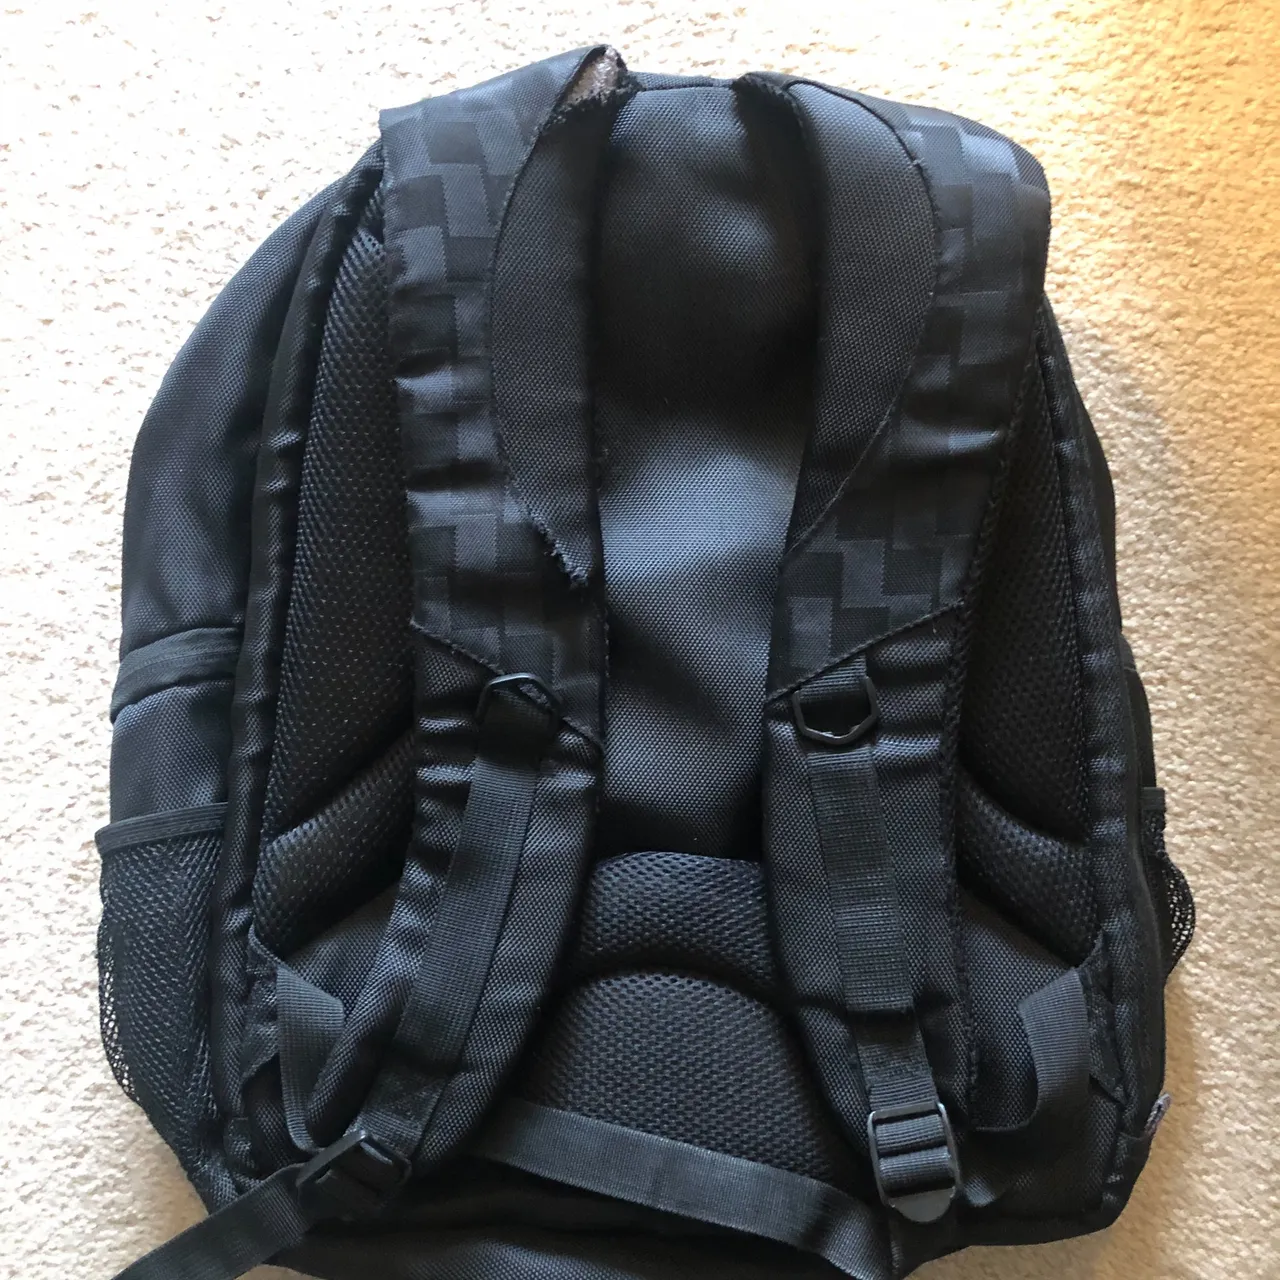 Free backpack photo 3